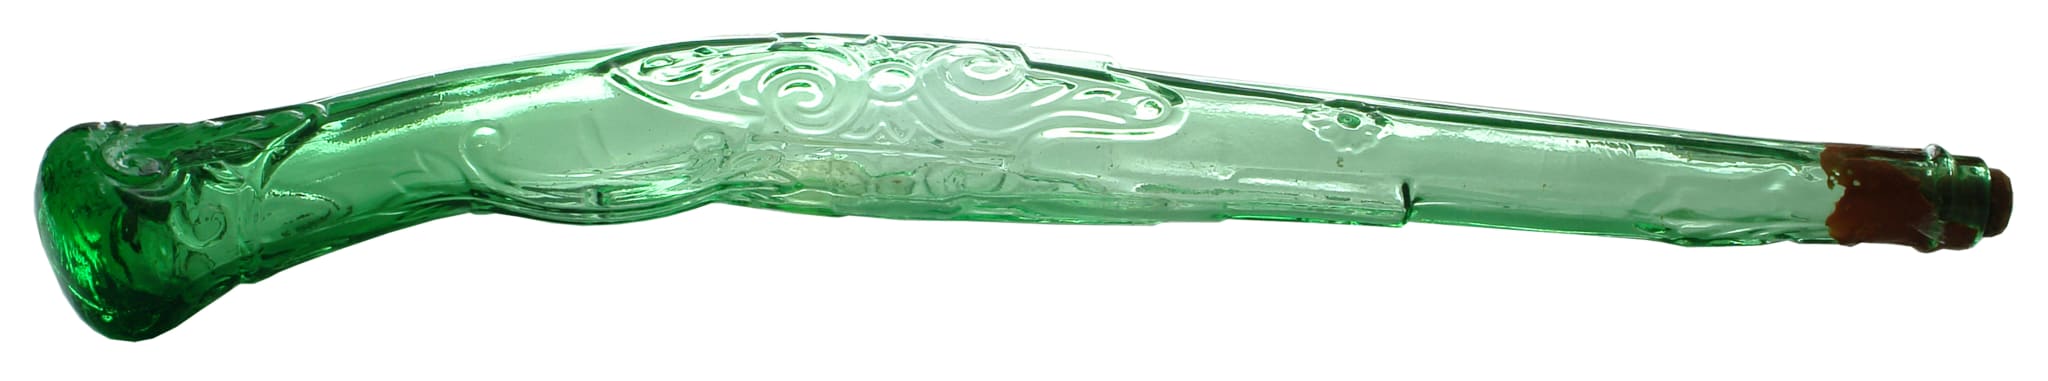 Frango's Bundaberg Rum Pistol Green Glass Bottle